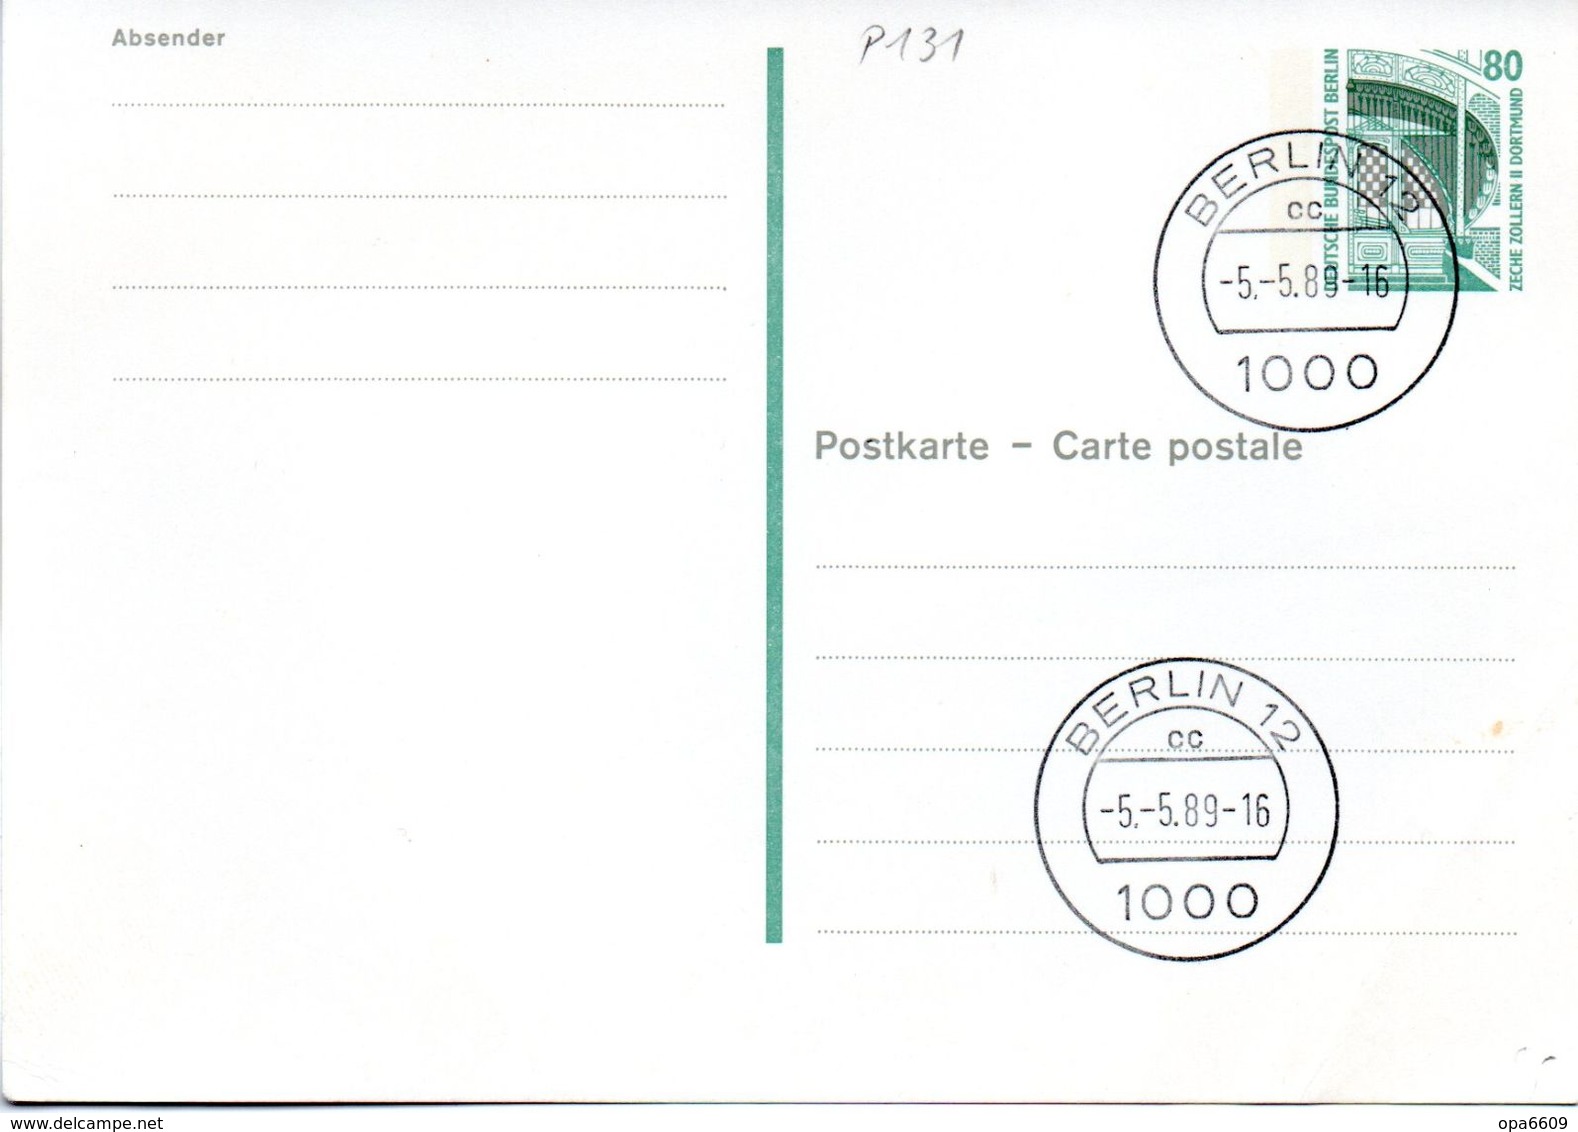 WB Amtl. Ganzsachen-Postkarte P131  Wst. "ZECHE ZOLLERN" 80(Pf) Grün, TSt.5.5.89 BERLIN 12 - Postkarten - Gebraucht